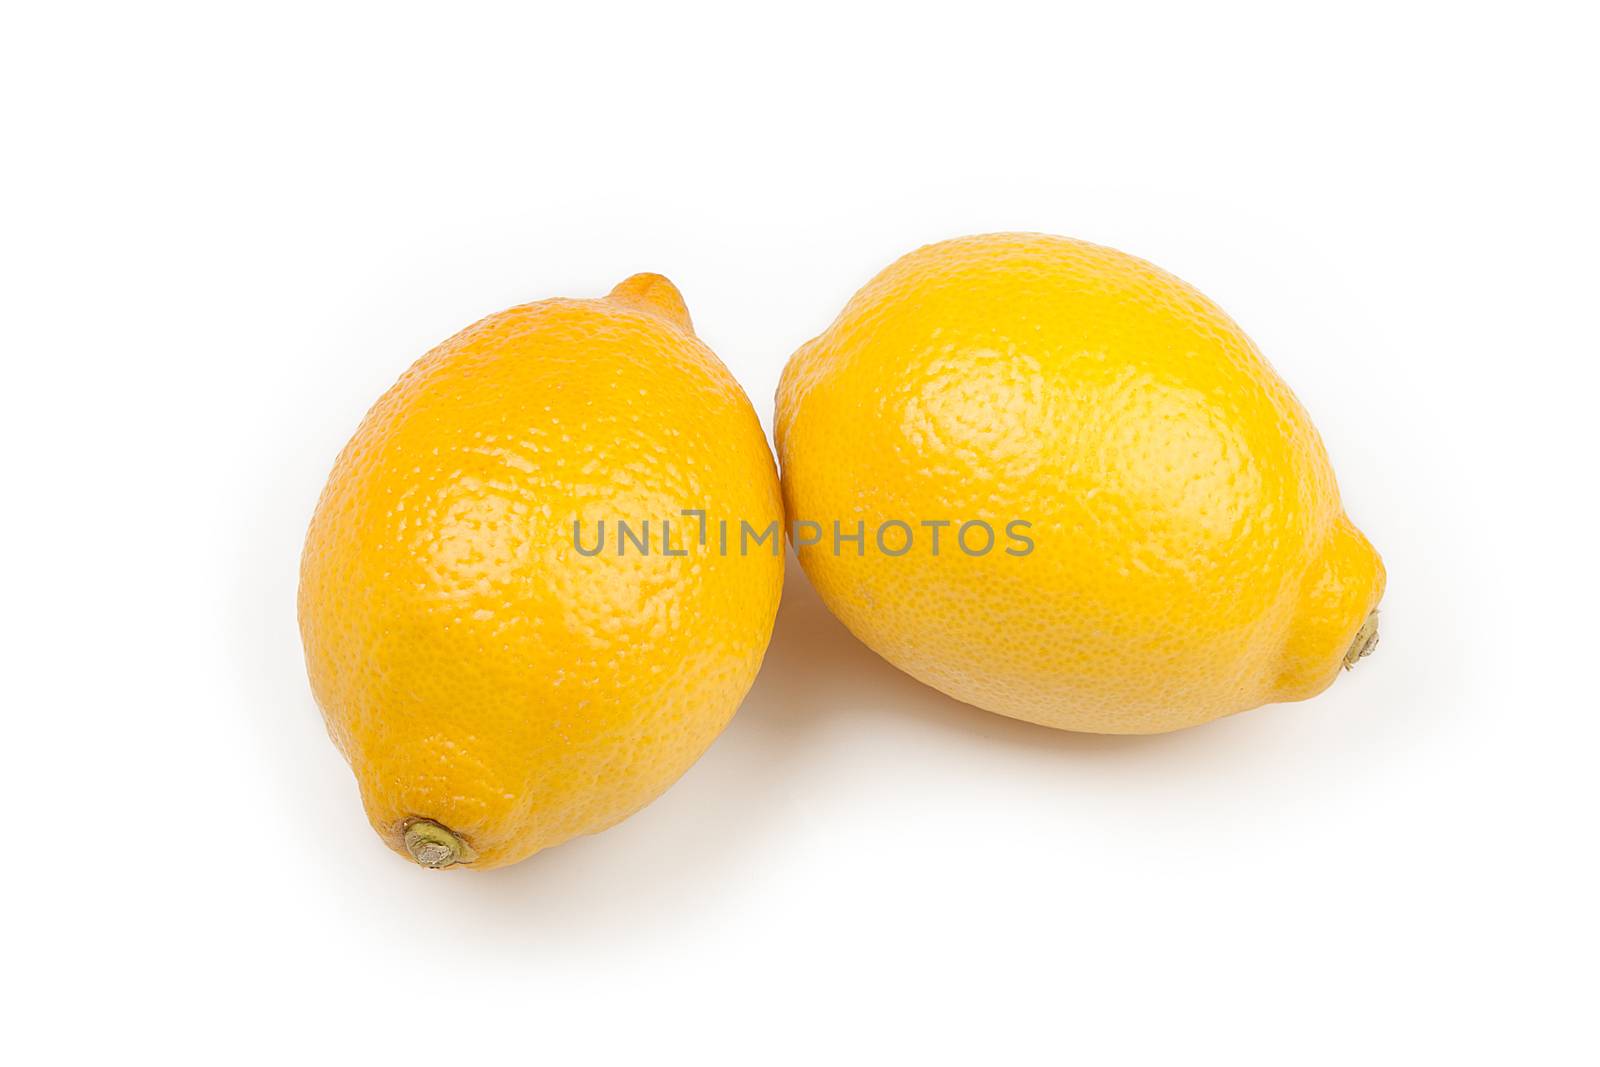 lemons isolated on white background, two yellow lemons